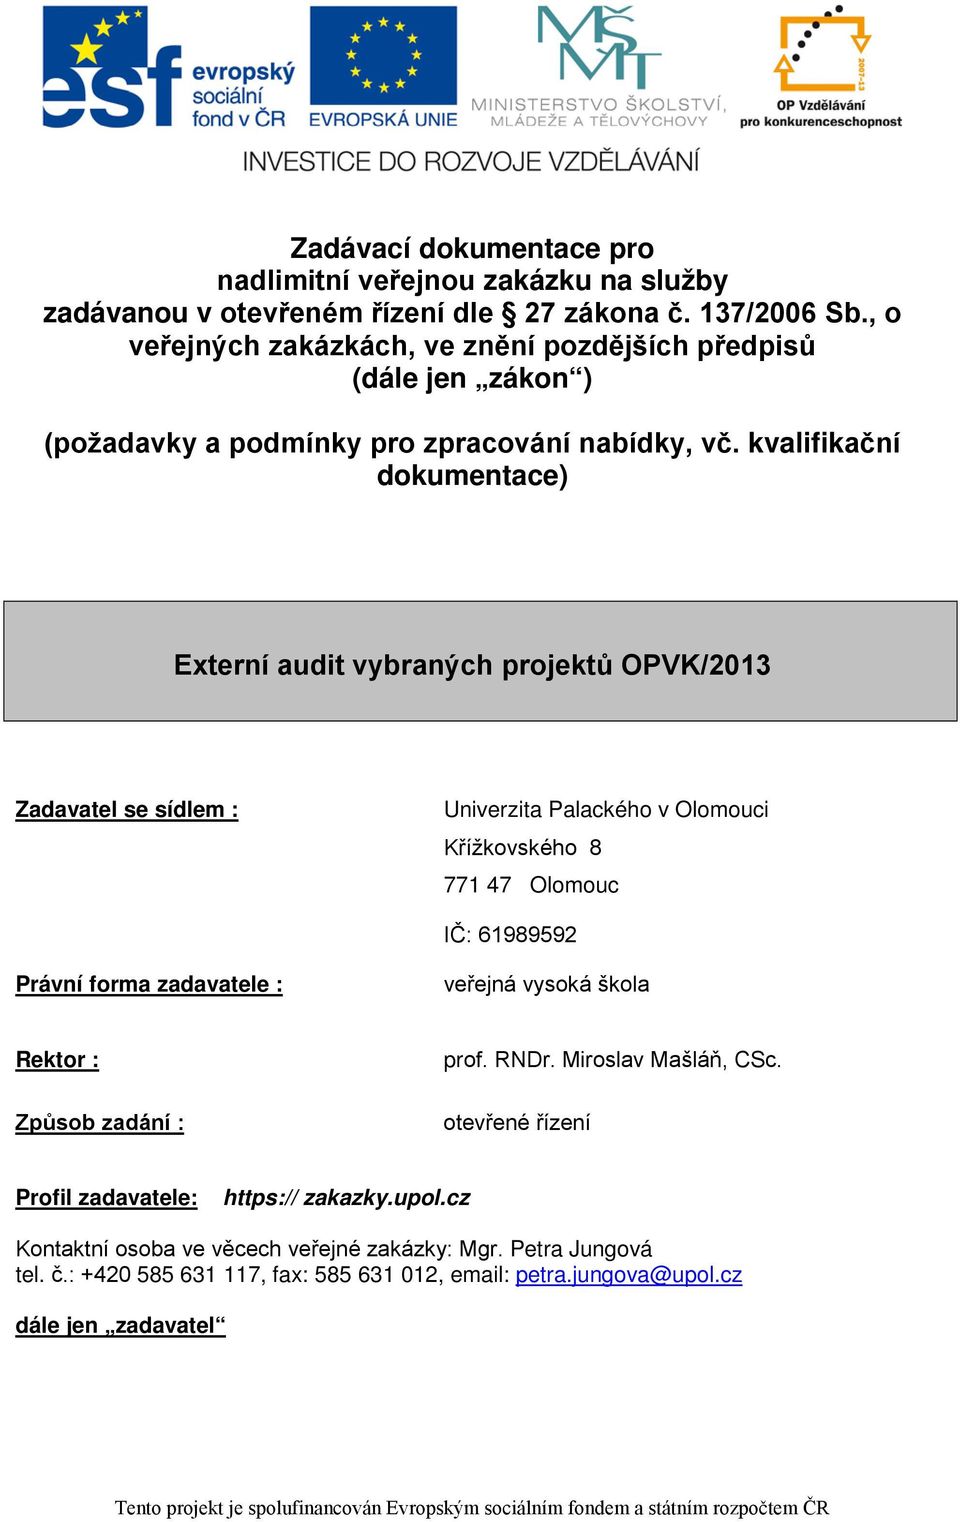 kvalifikační dokumentace) Externí audit vybraných projektů OPVK/2013 Zadavatel se sídlem : Univerzita Palackého v Olomouci Křížkovského 8 771 47 Olomouc IČ: 61989592 Právní forma zadavatele : veřejná